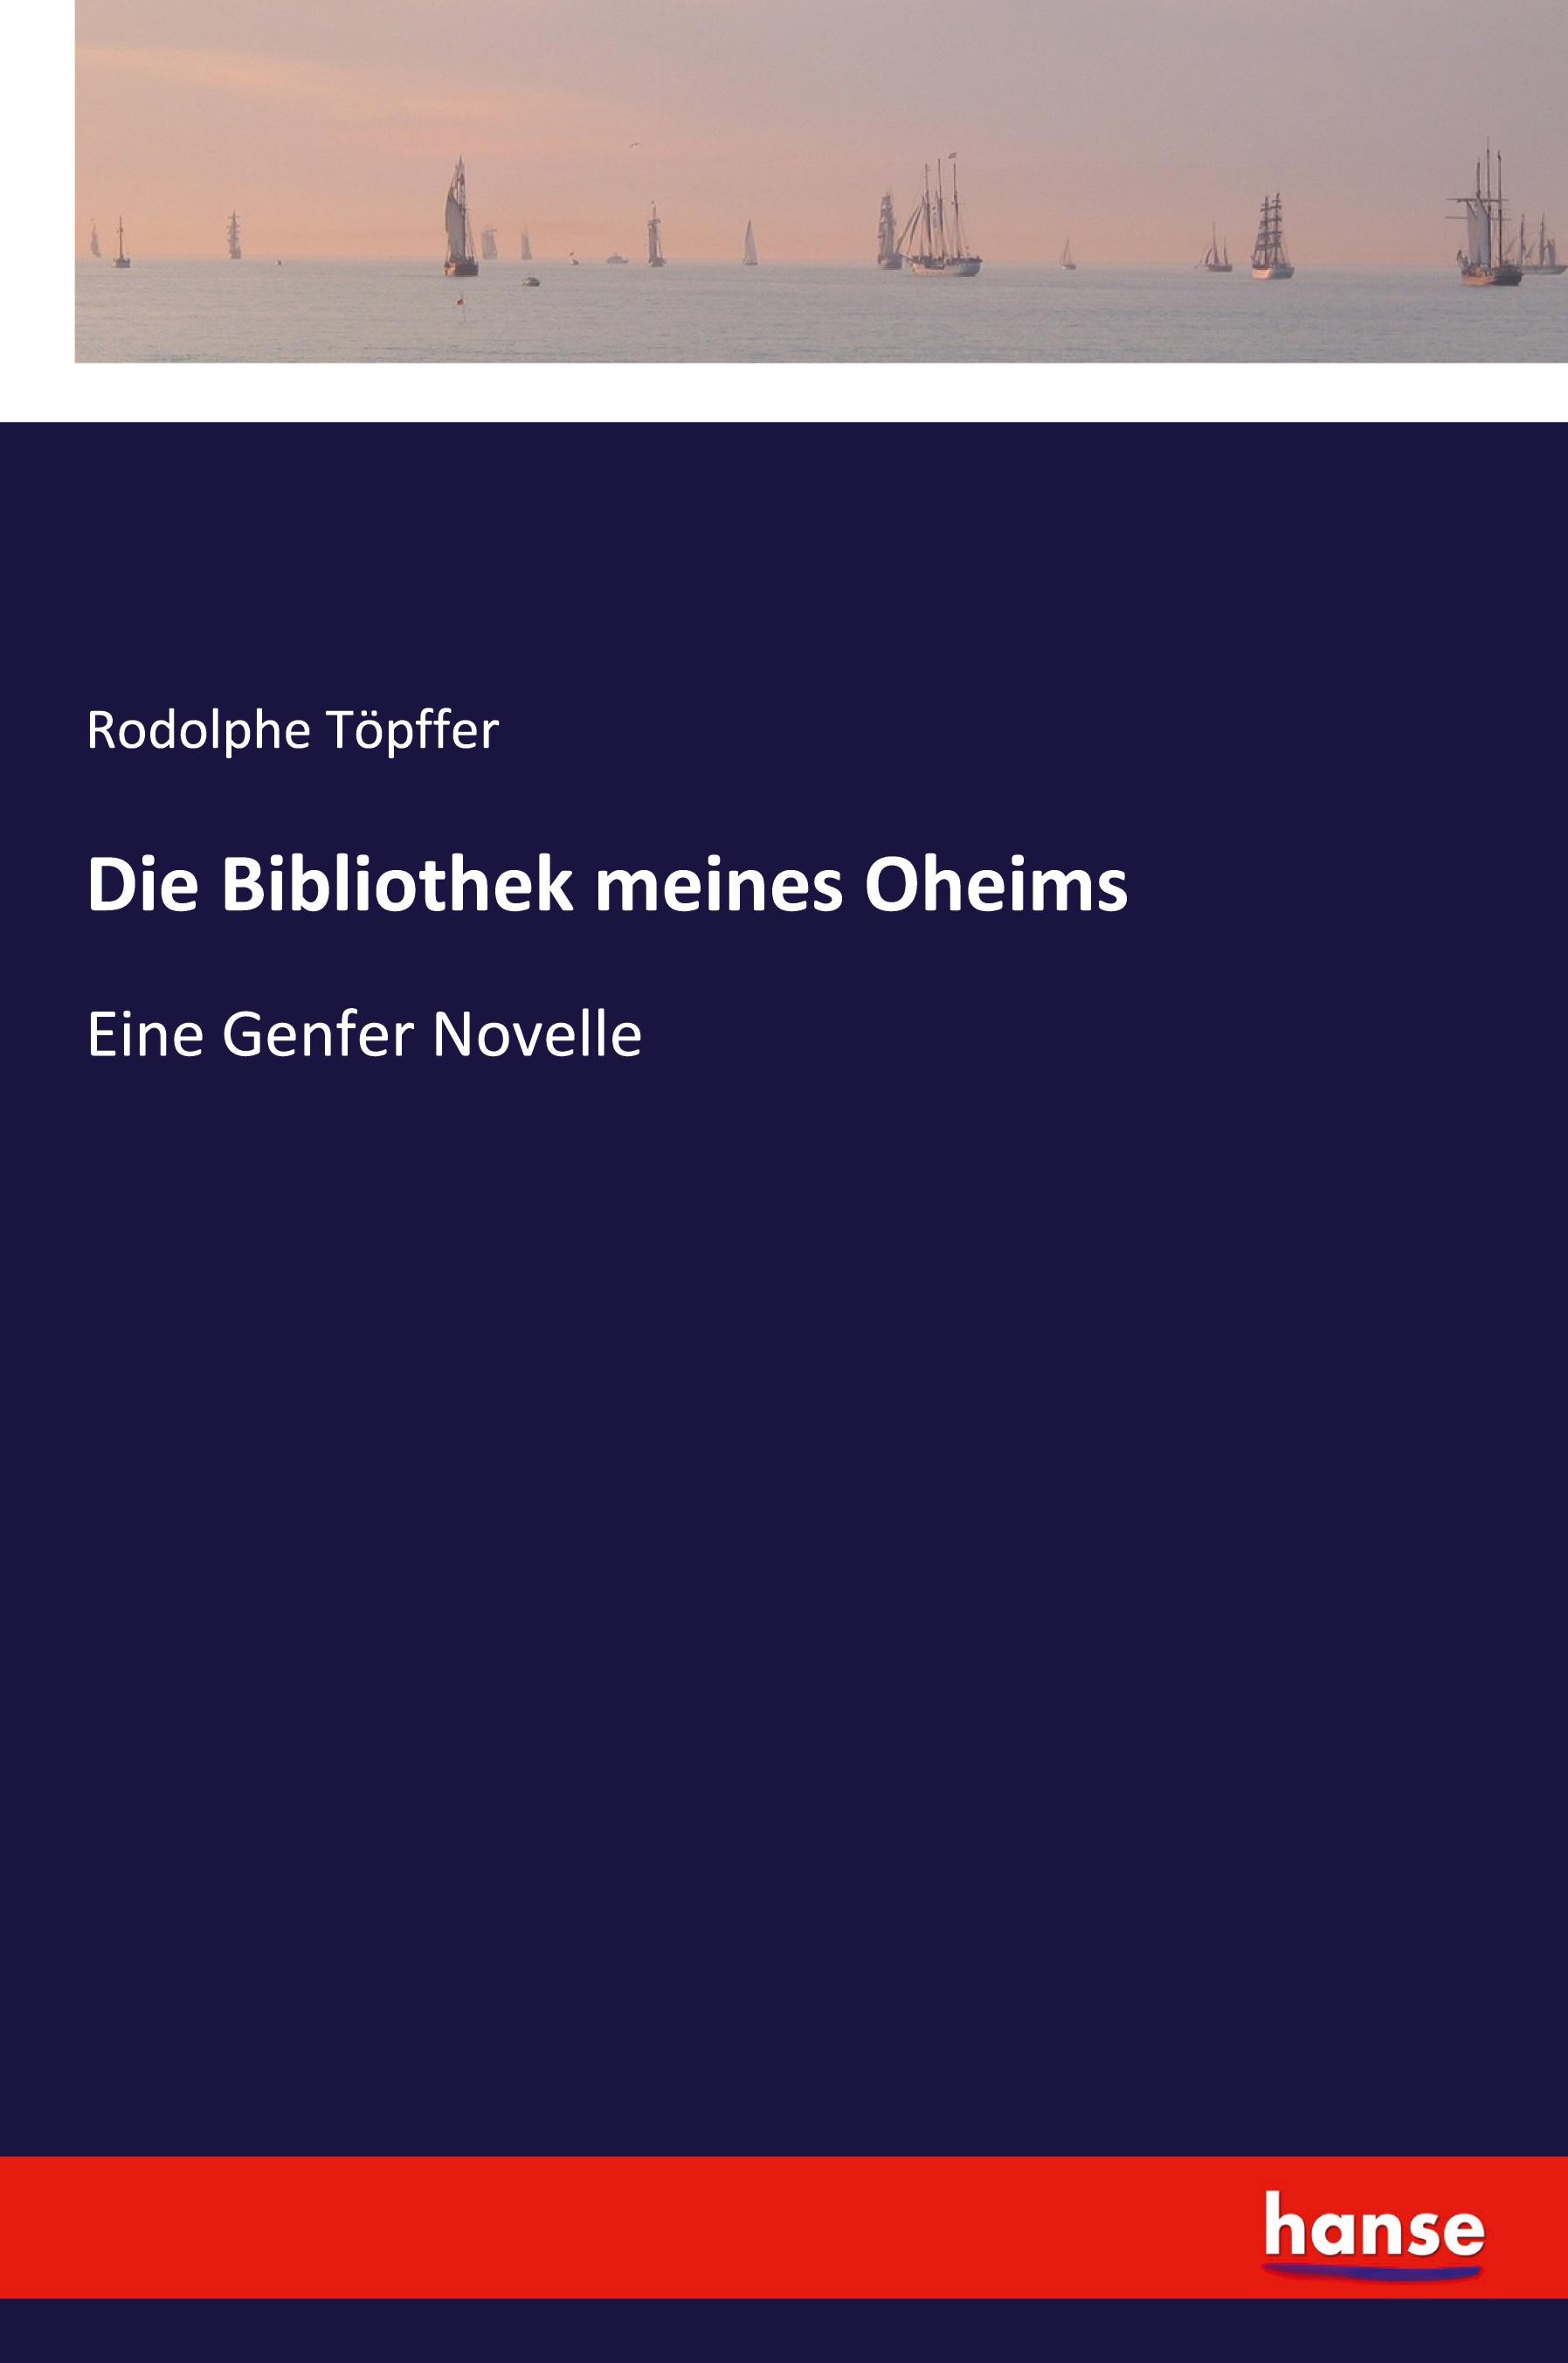 Die Bibliothek meines Oheims / Eine Genfer Novelle / Rodolphe Töpffer / Taschenbuch / Paperback / 276 S. / Deutsch / 2021 / hansebooks / EAN 9783337362294 - Töpffer, Rodolphe